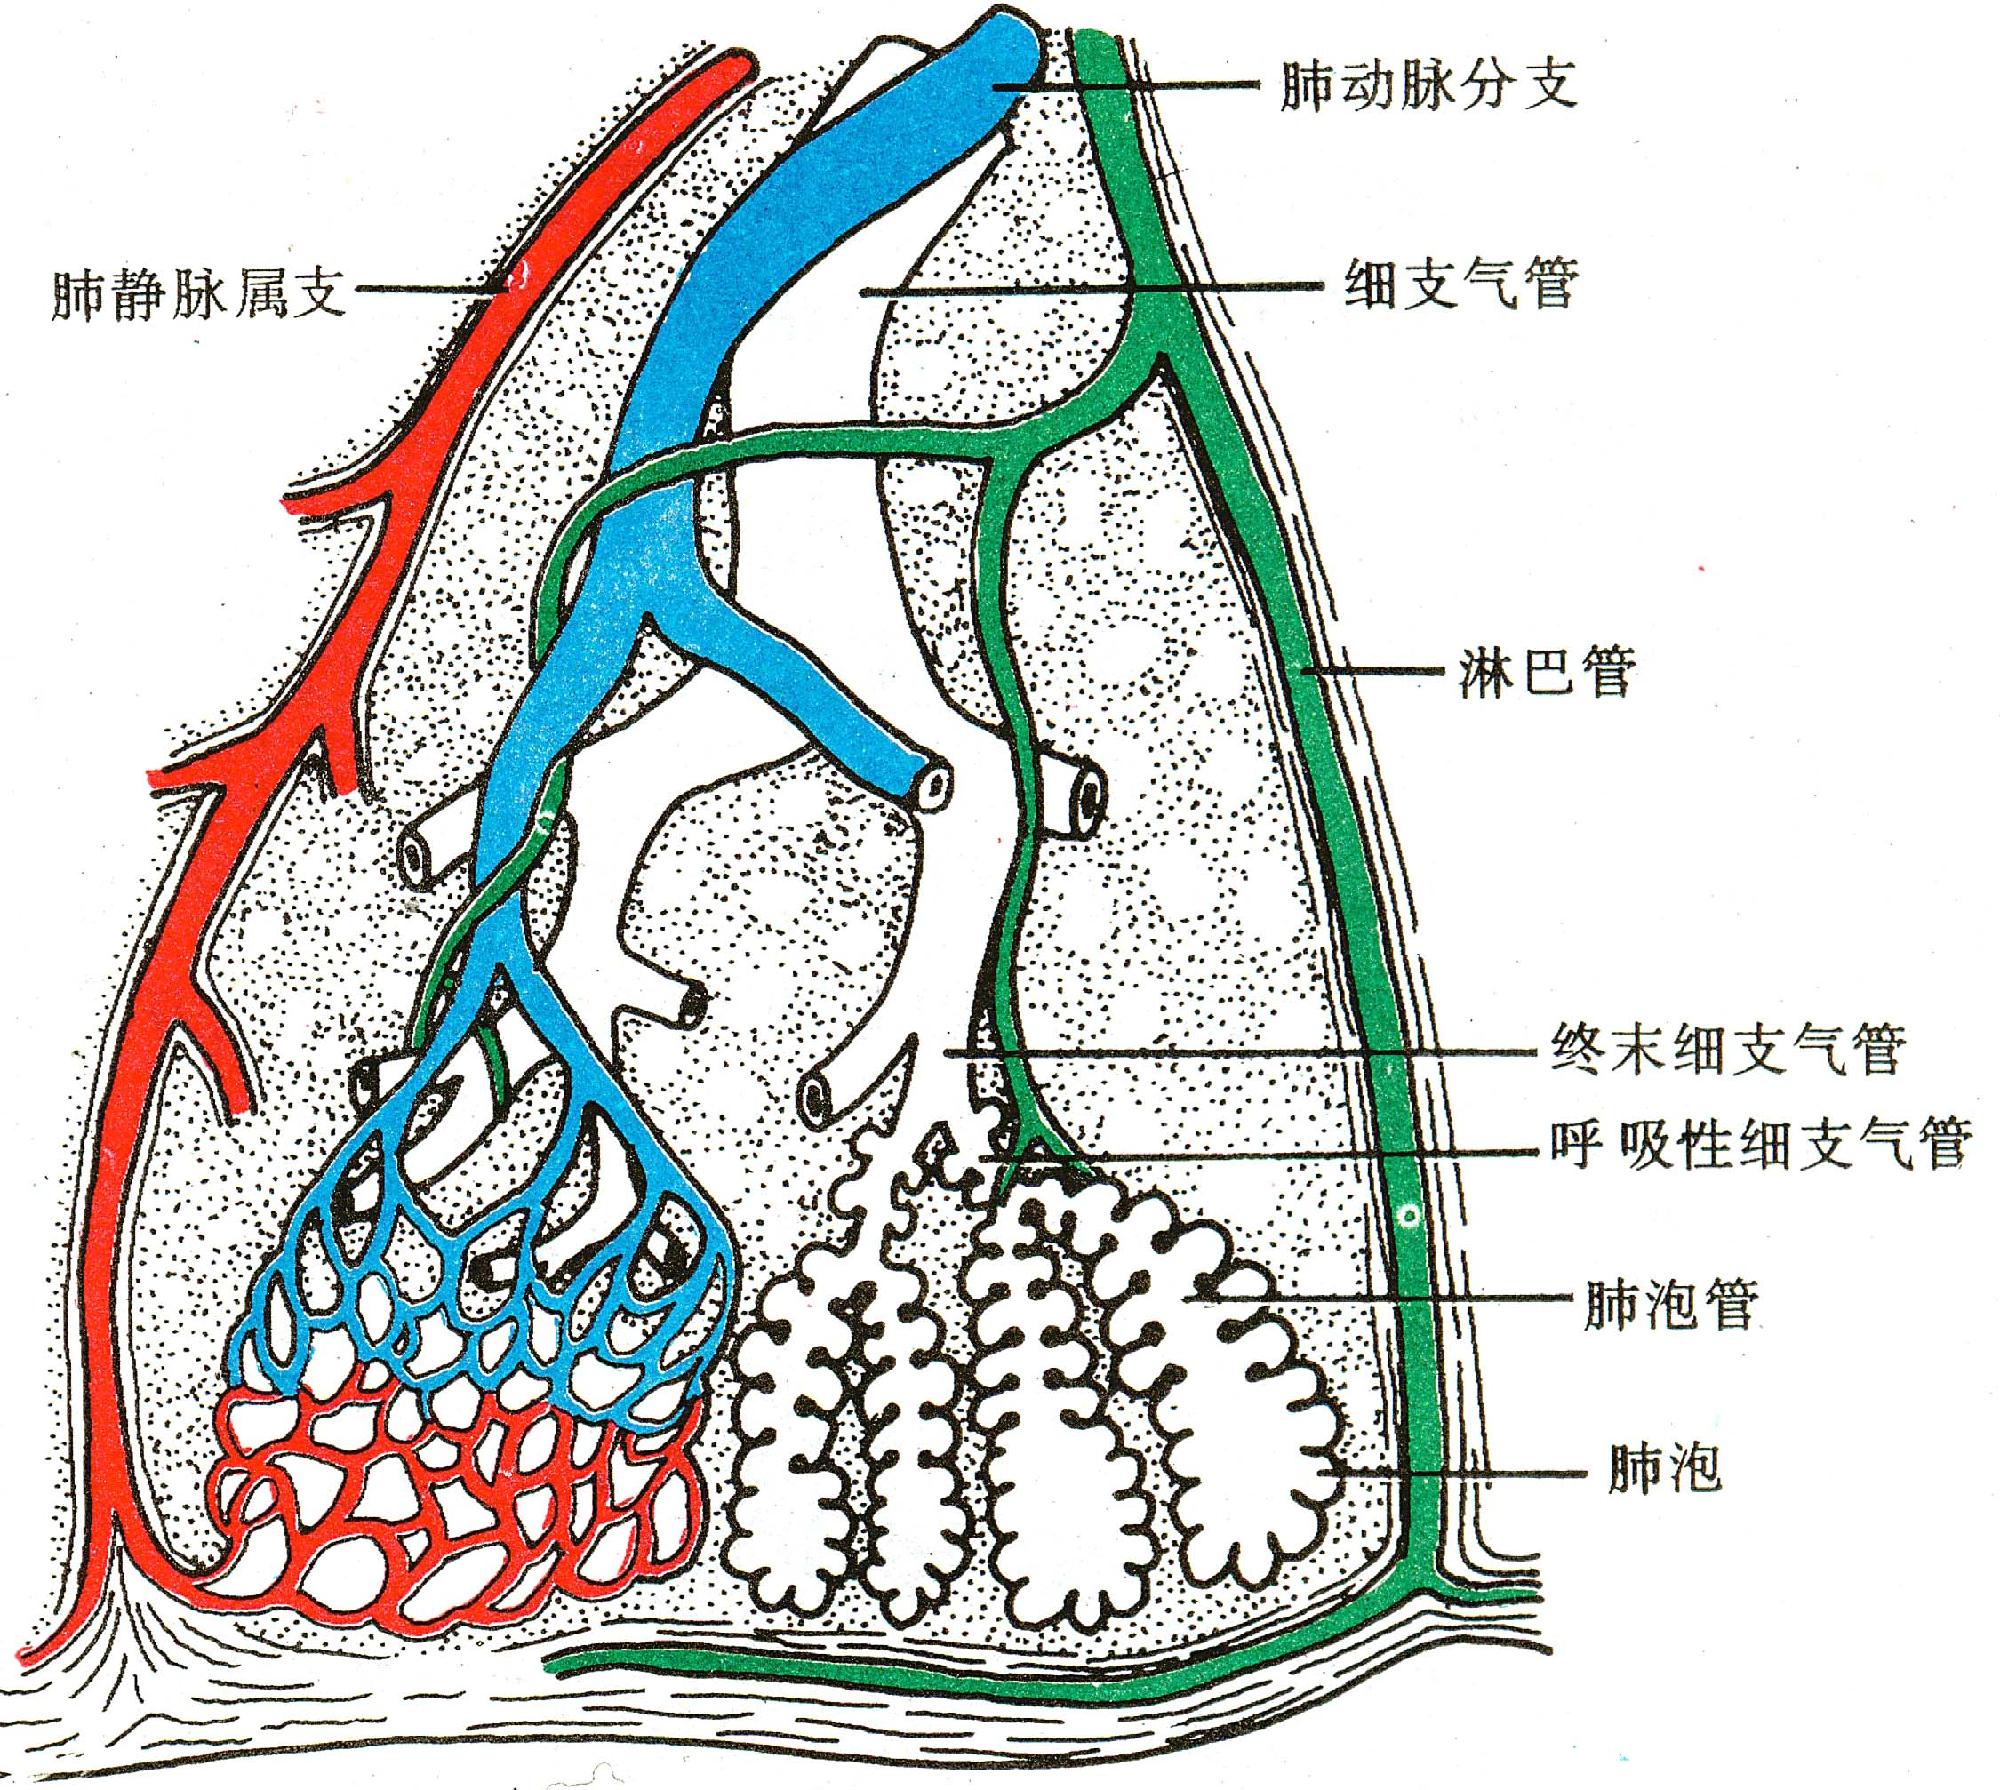 肺解剖图结构